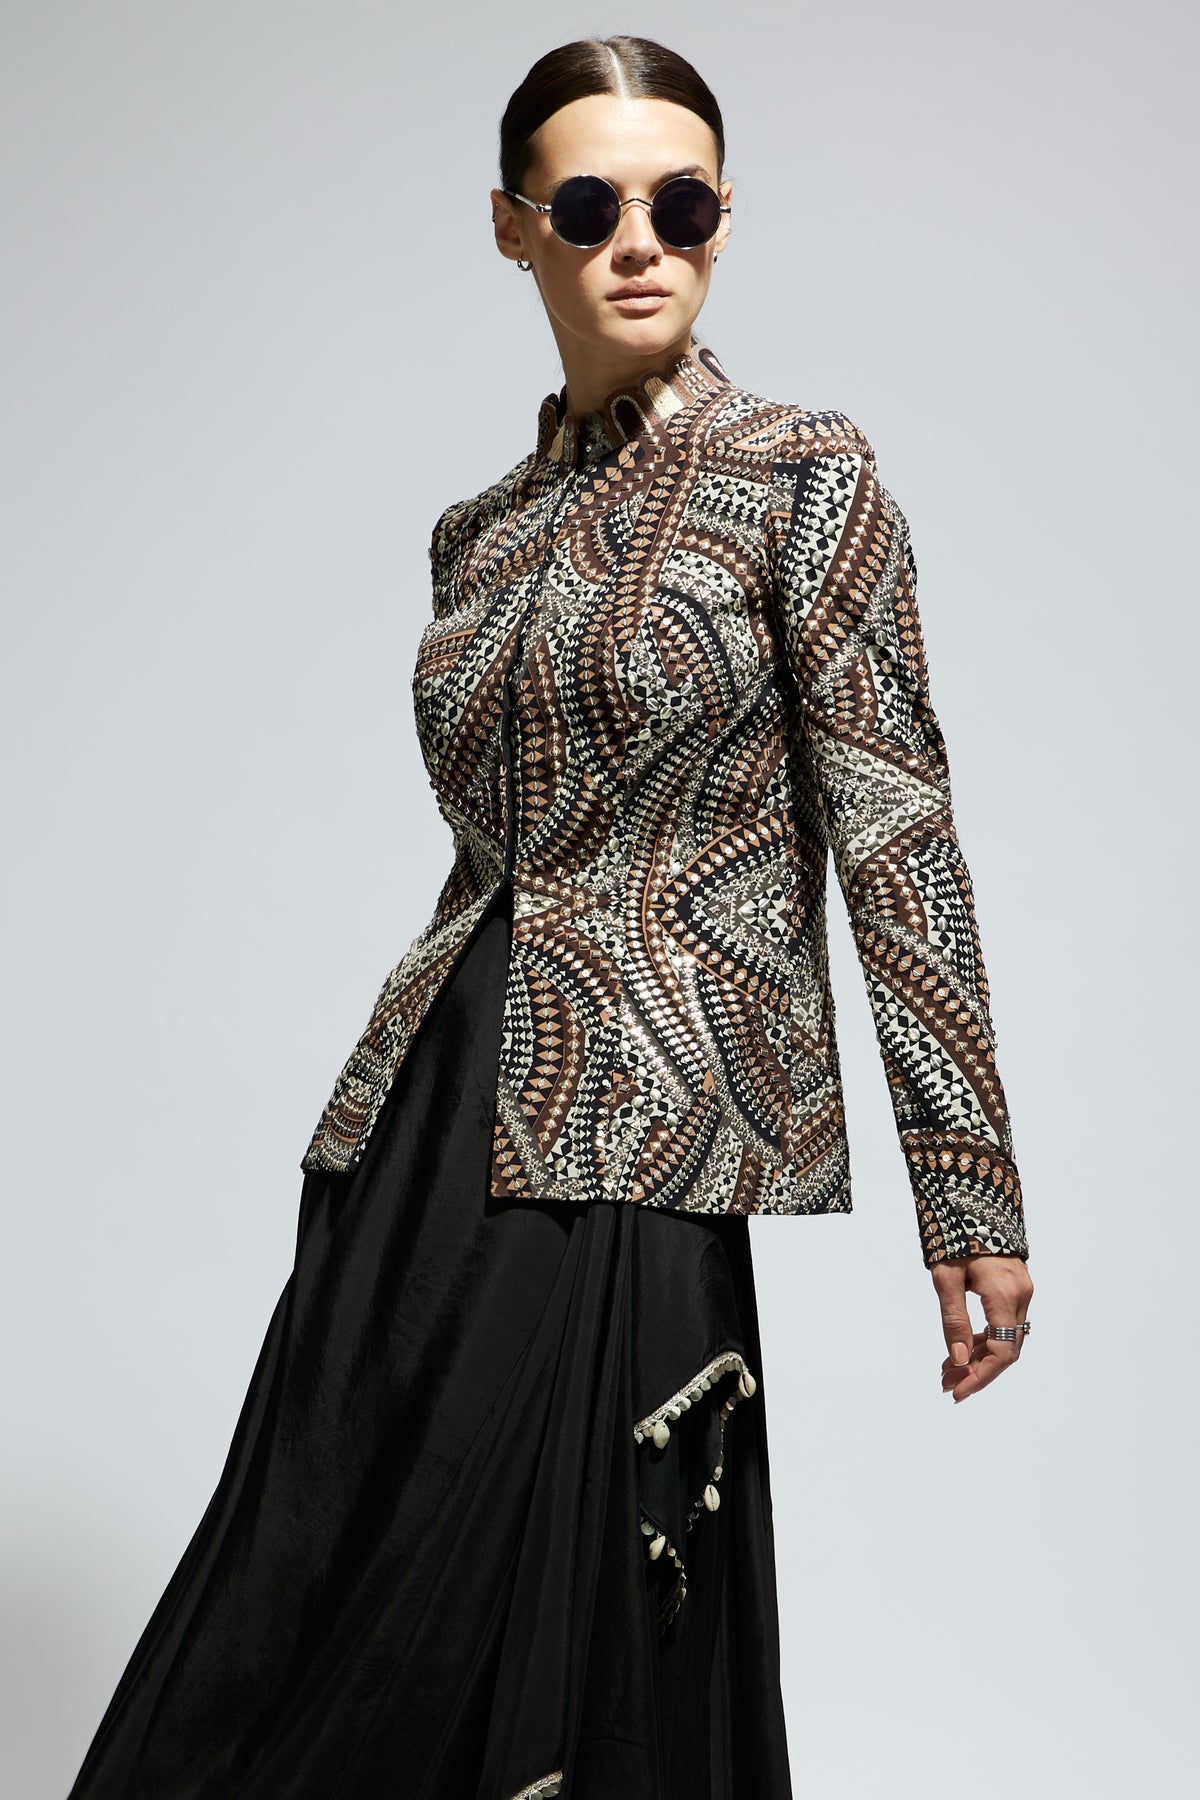 Zentangle Embellished Jacket With Skirt